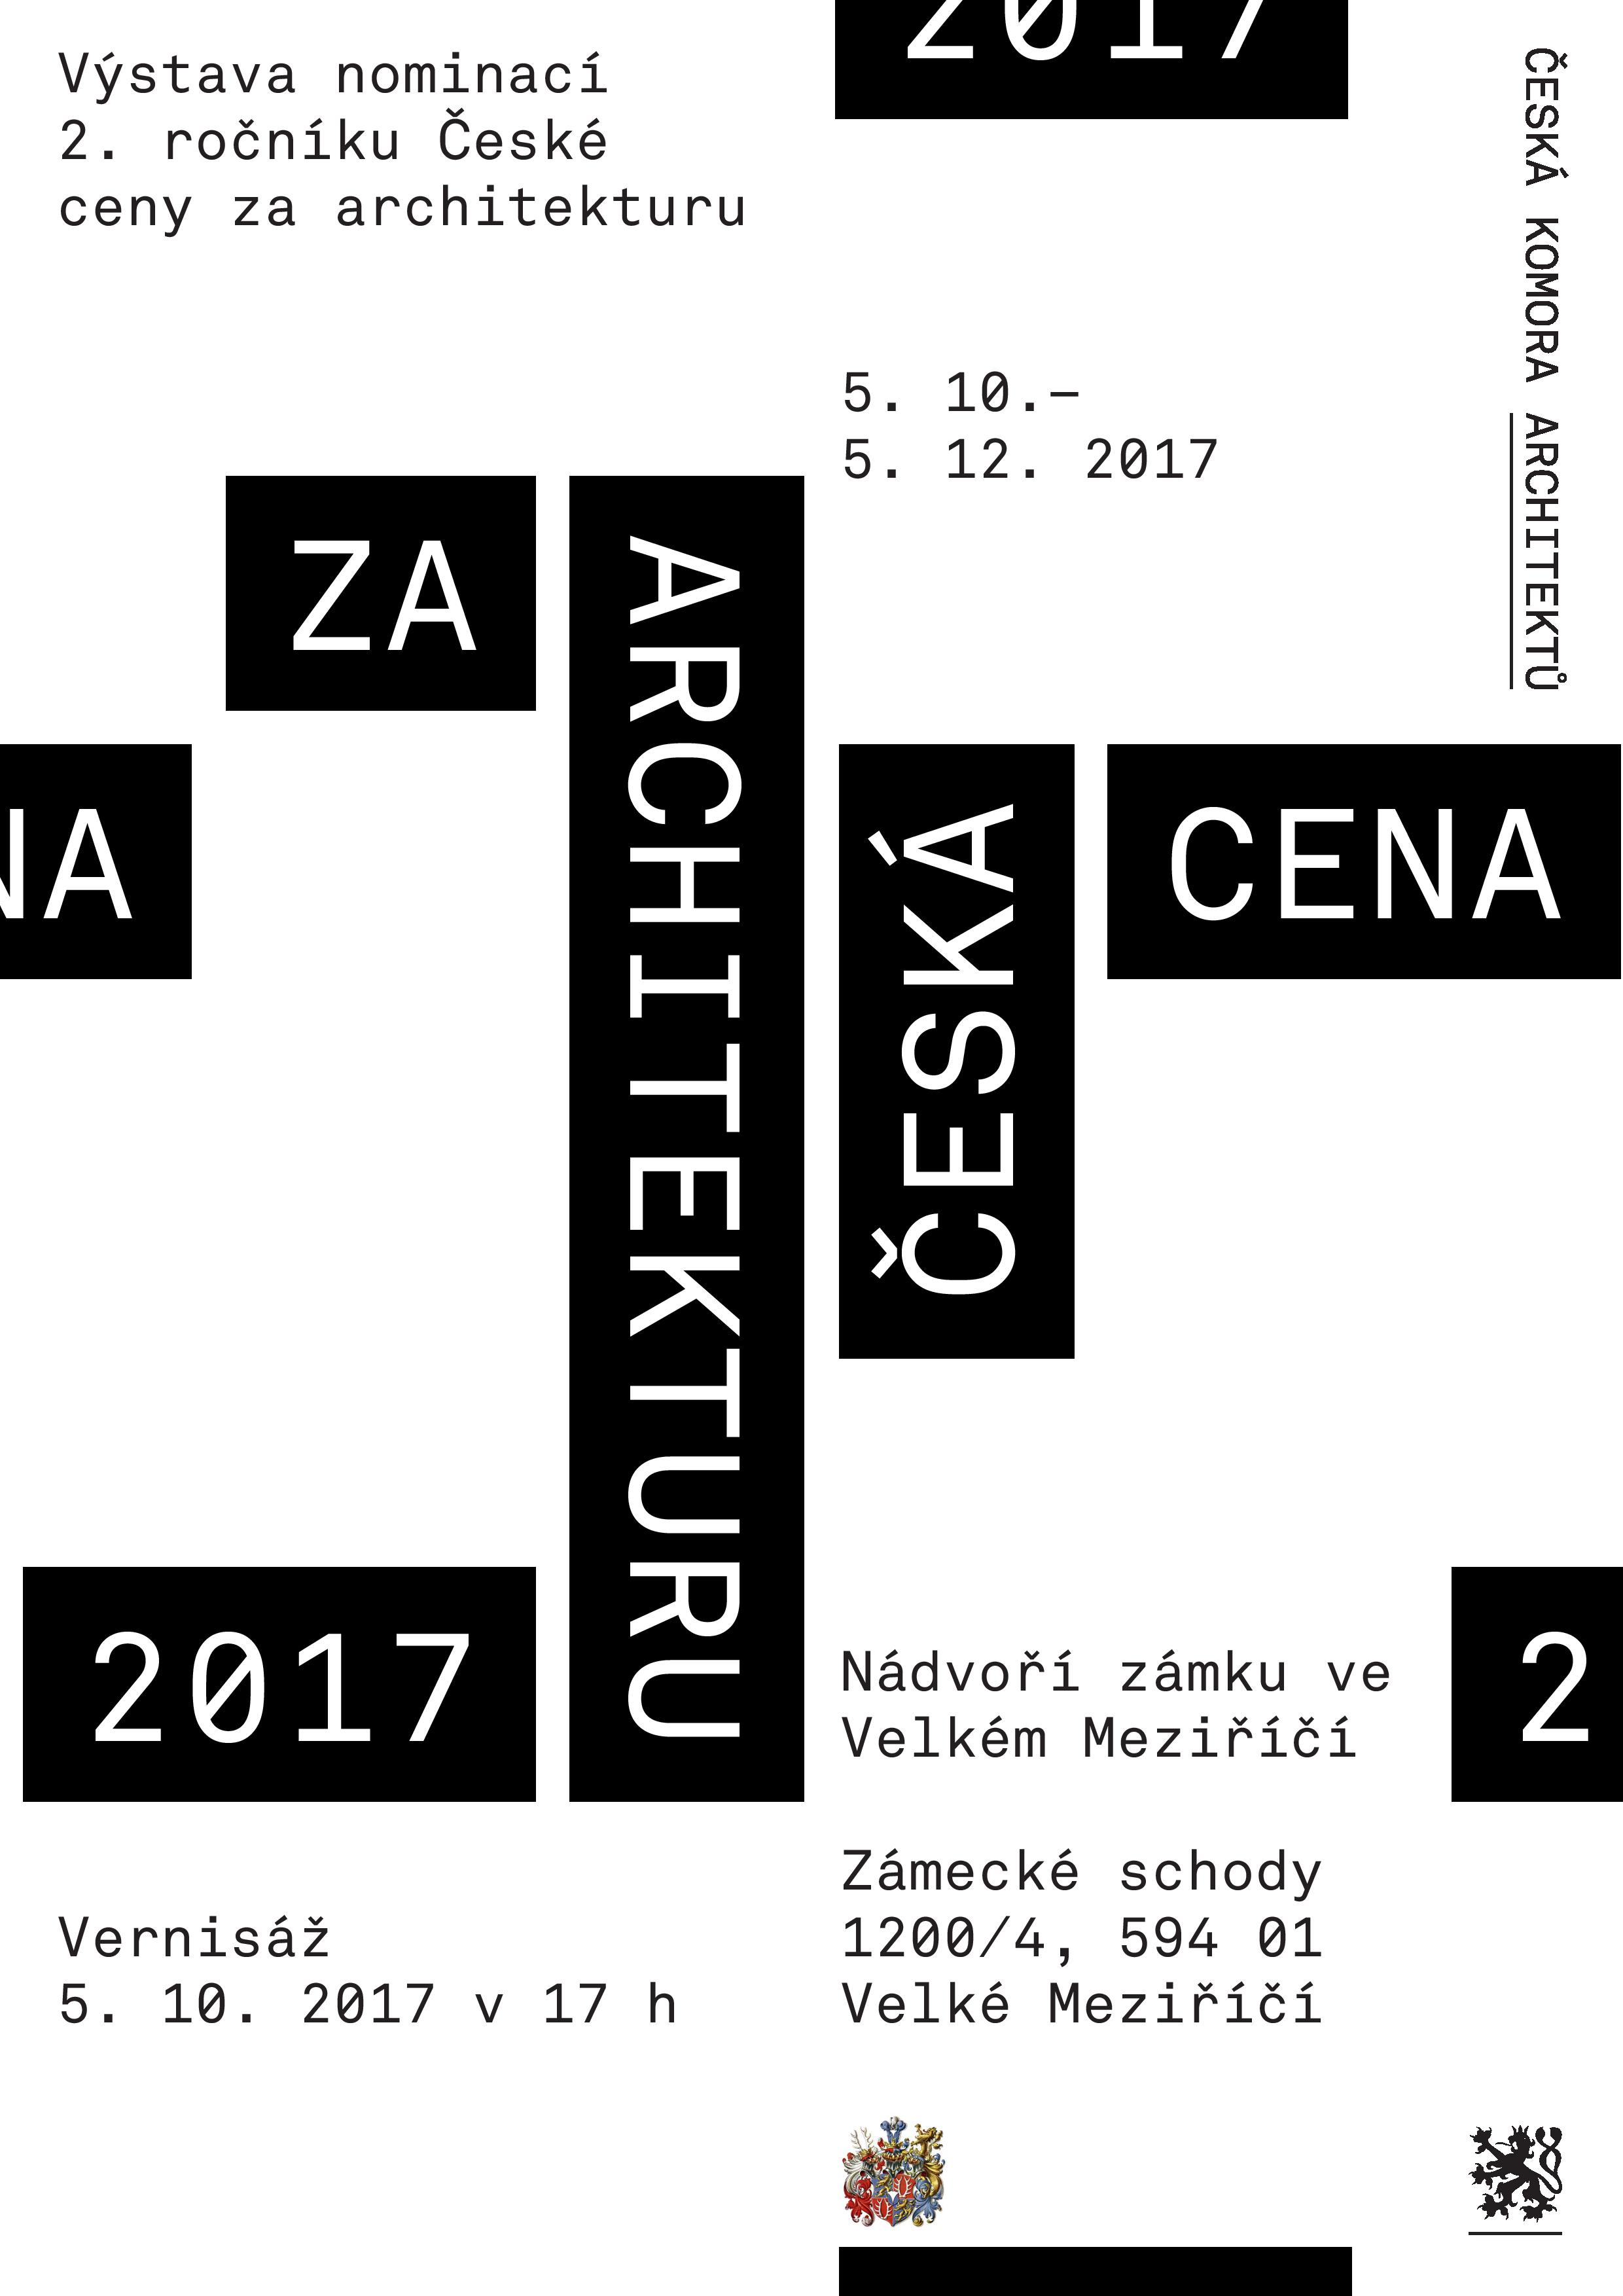 Na nádvoří zámku odstartovala výstava nominovaných děl na Českou cenu za architekturu 2017